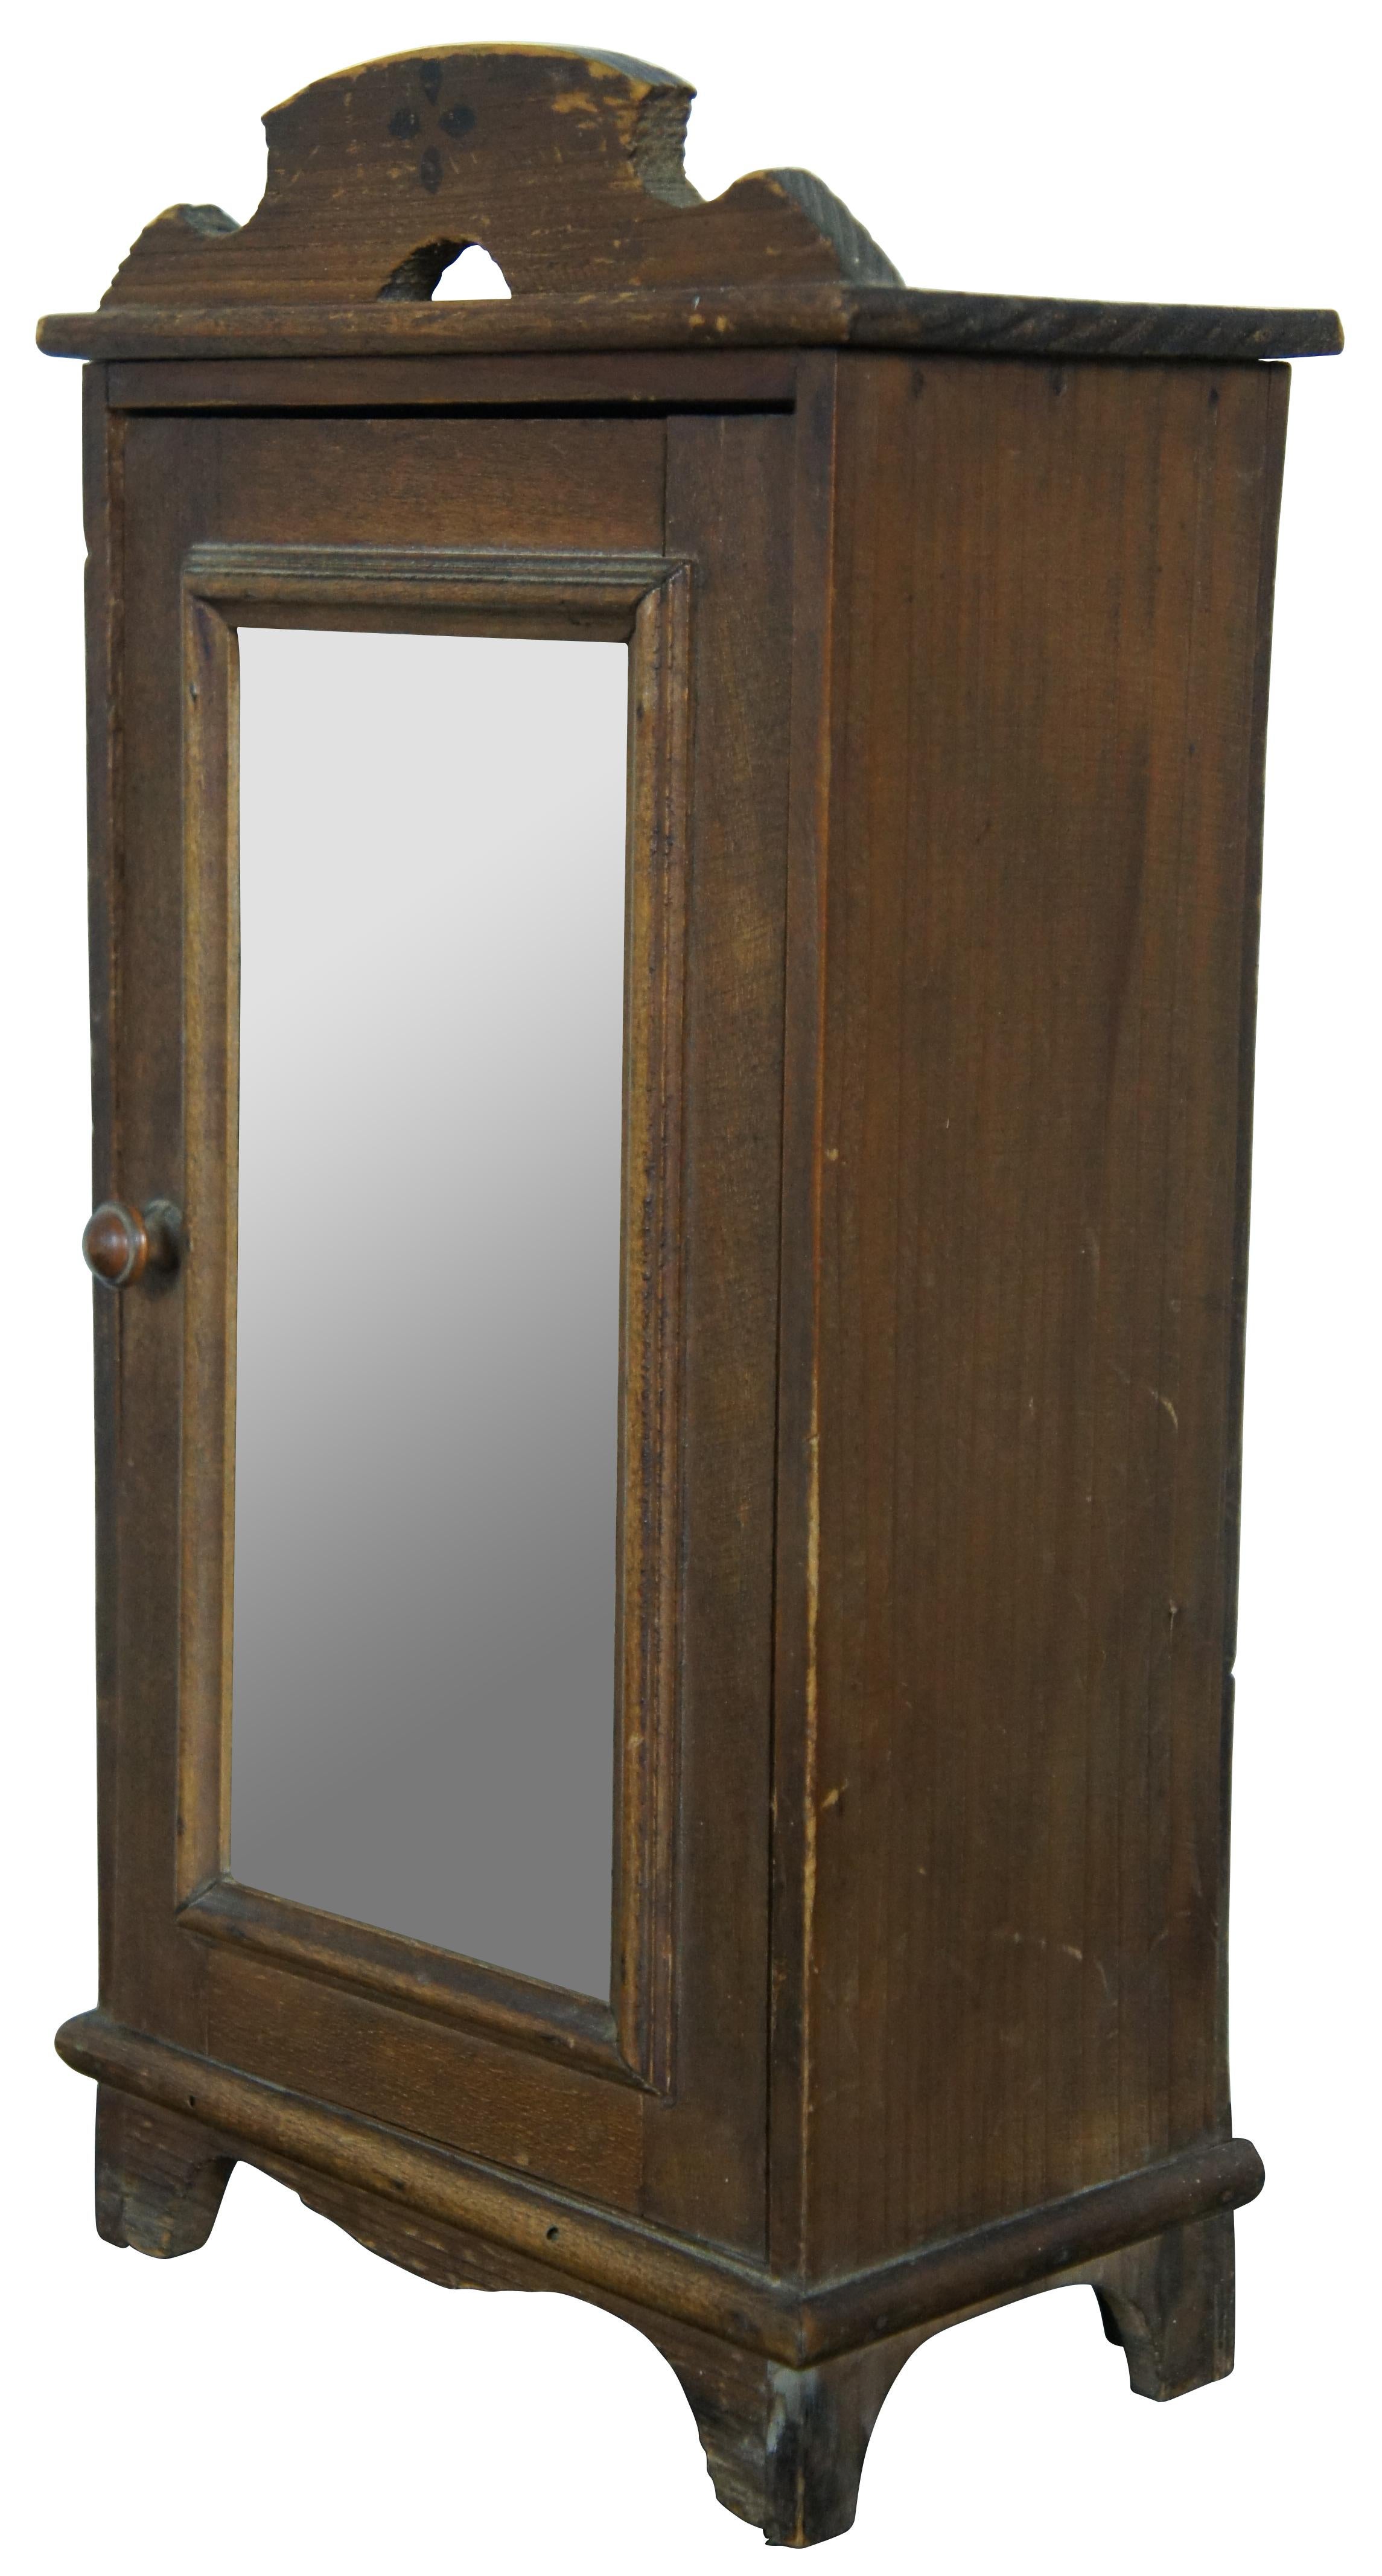 Penderie ou armoire ancienne en pin du 19e siècle, avec porte en miroir, une étagère à l'intérieur et un fronton sculpté à la main avec une fleur d'art populaire à quatre pétales. Mesure : 14